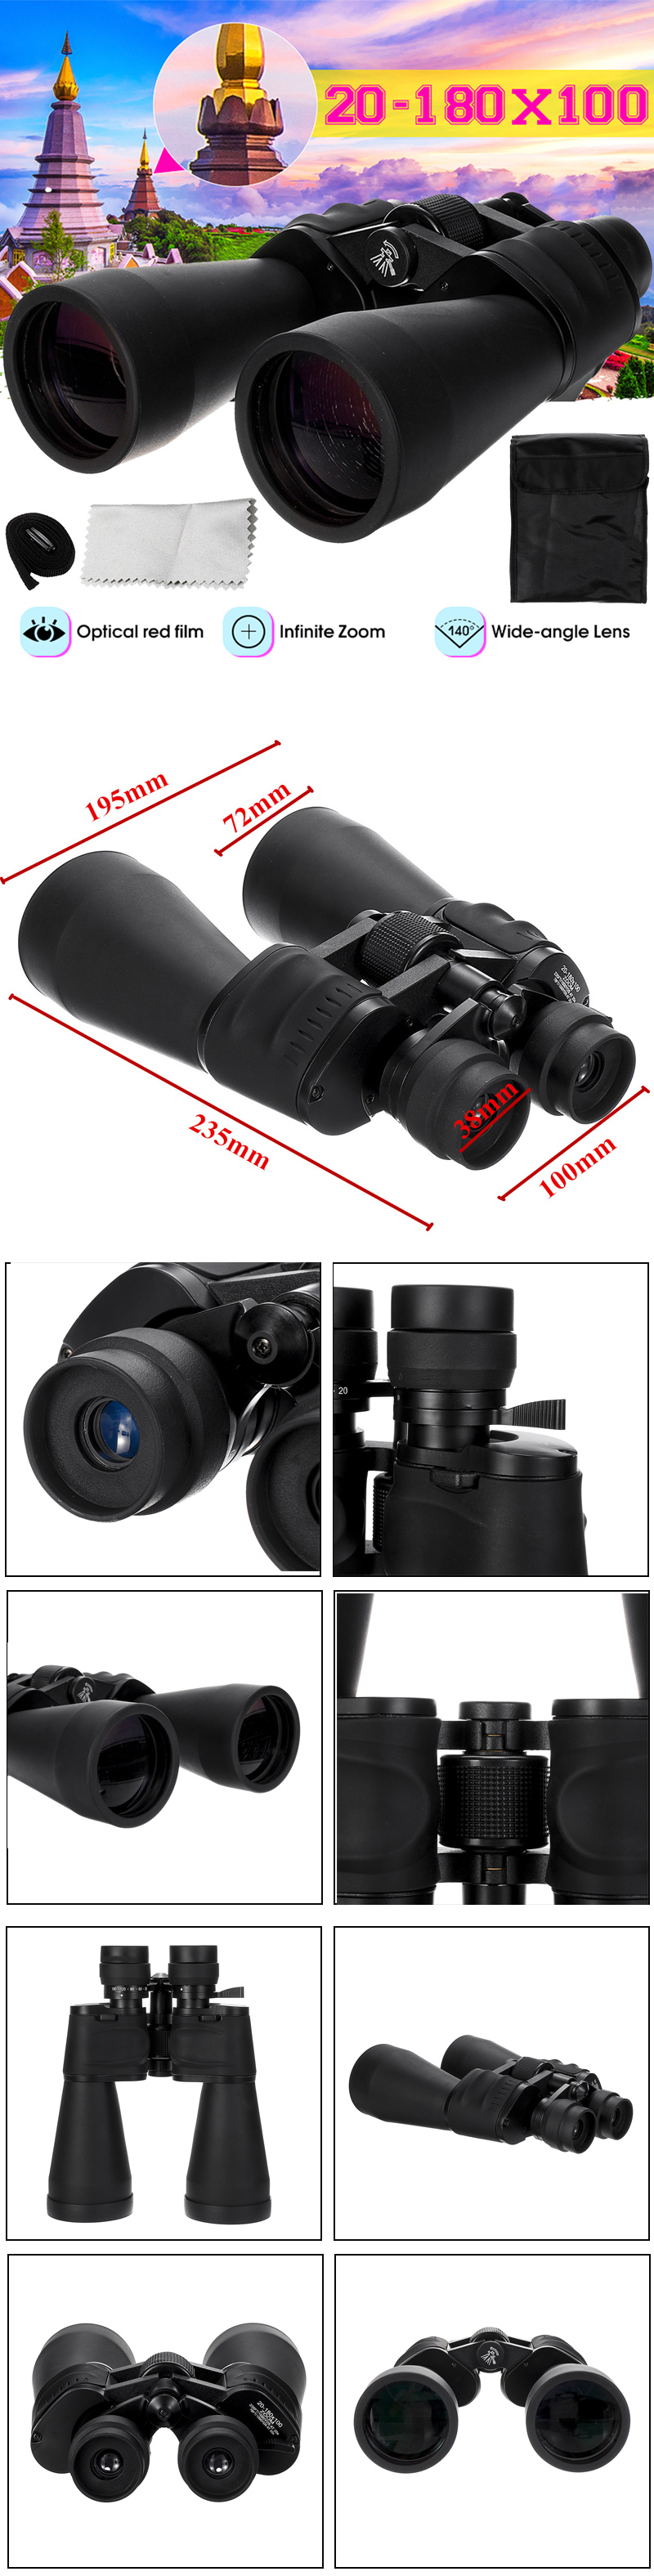 20-180x100-Zoom-Handheld-Binocular-HD-Optic-BAK4-Telescope-Outdoor-Camping-1549510-1